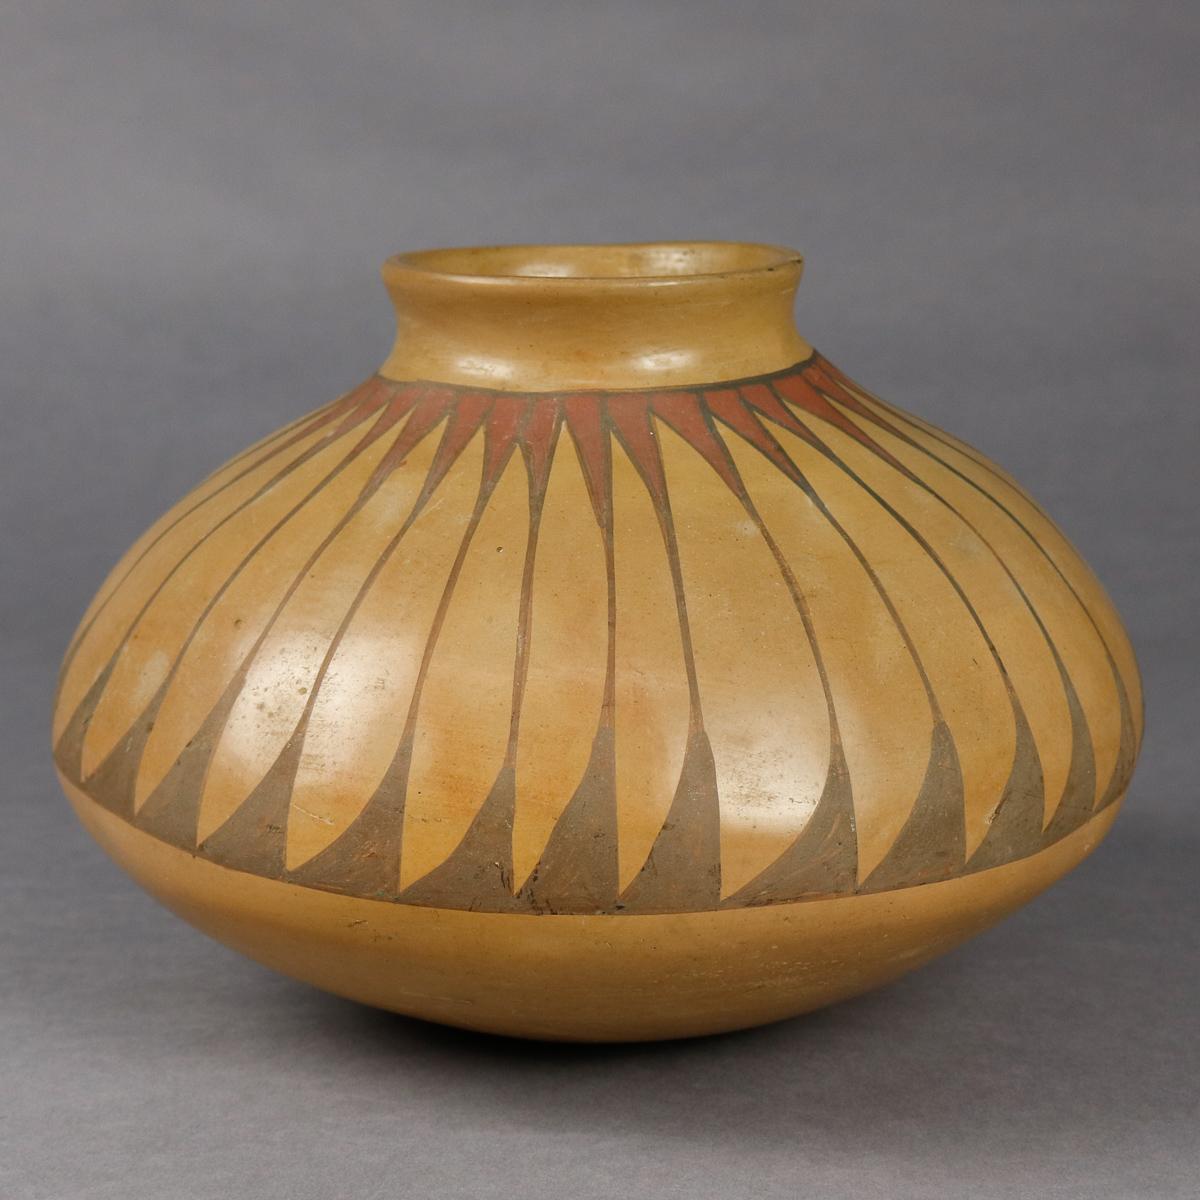 Ceramic Southwest Native American Indian Acoma Stylized Feather Pottery Vase, circa 1900